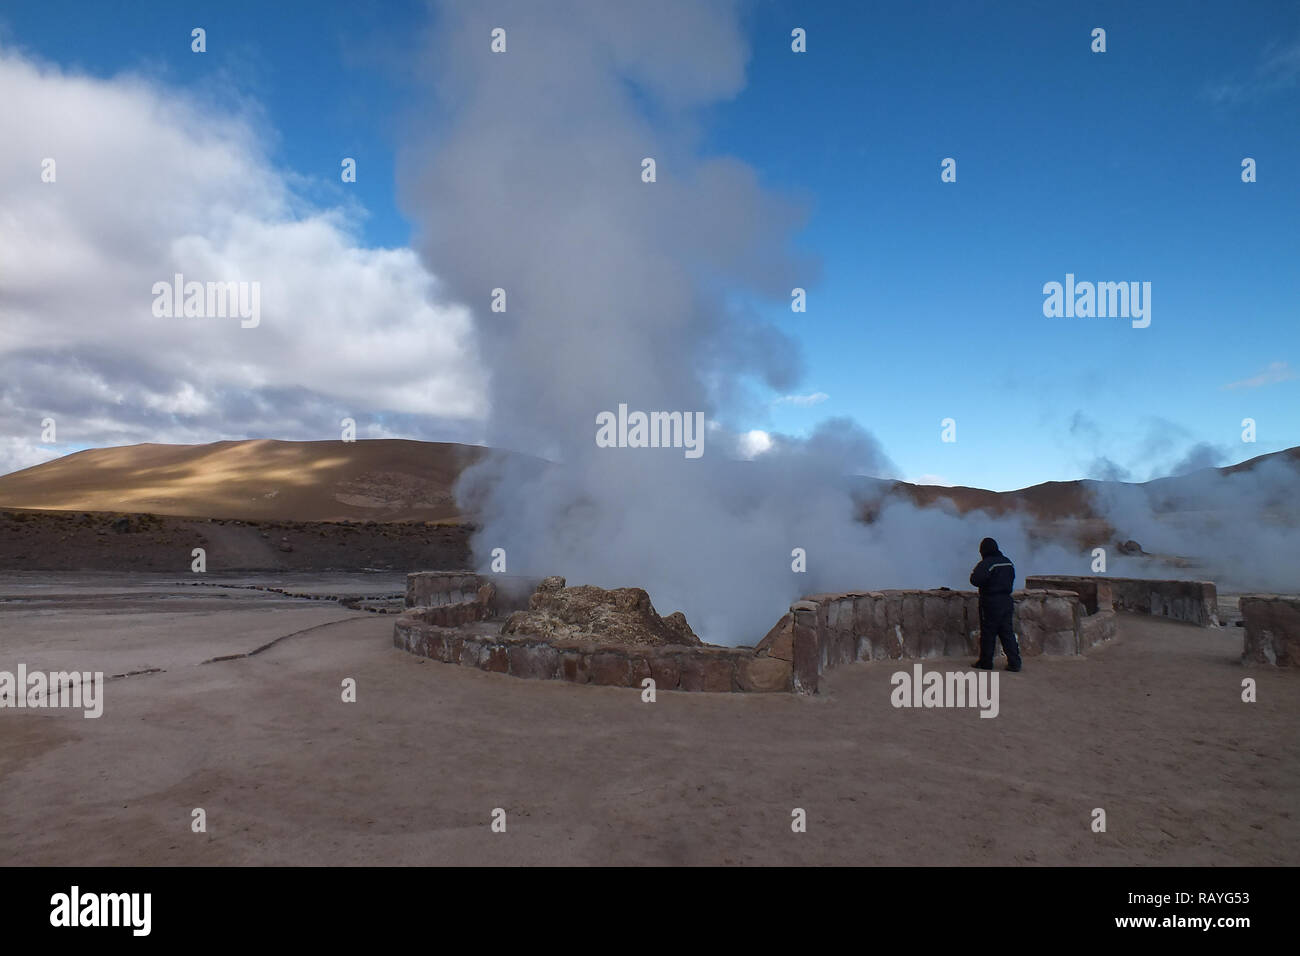 L'energia geotermica più grande del Sud America e la terza del mondo. Deserto di Atacama-Cile. I turisti stanno cercando di scaldarsi fino a caldo con vapore. Foto Stock